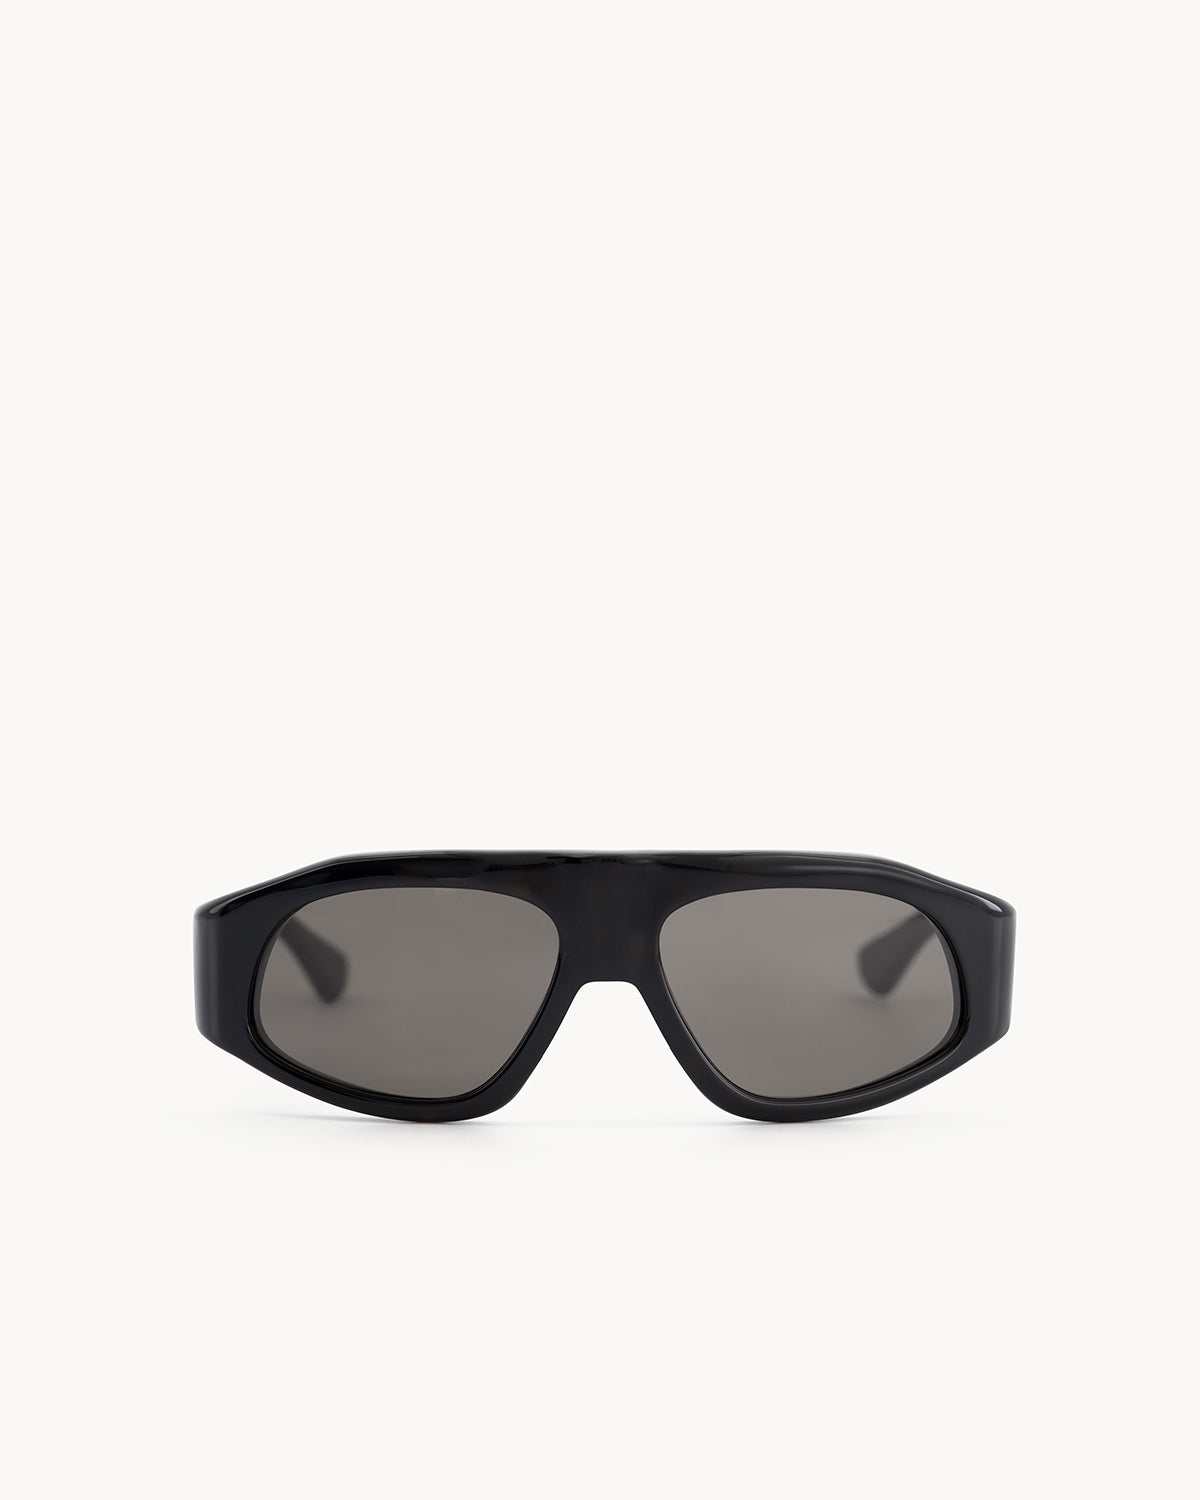 Port Tanger Irfan Sunglasses in Black Acetate and Black Lenses 1